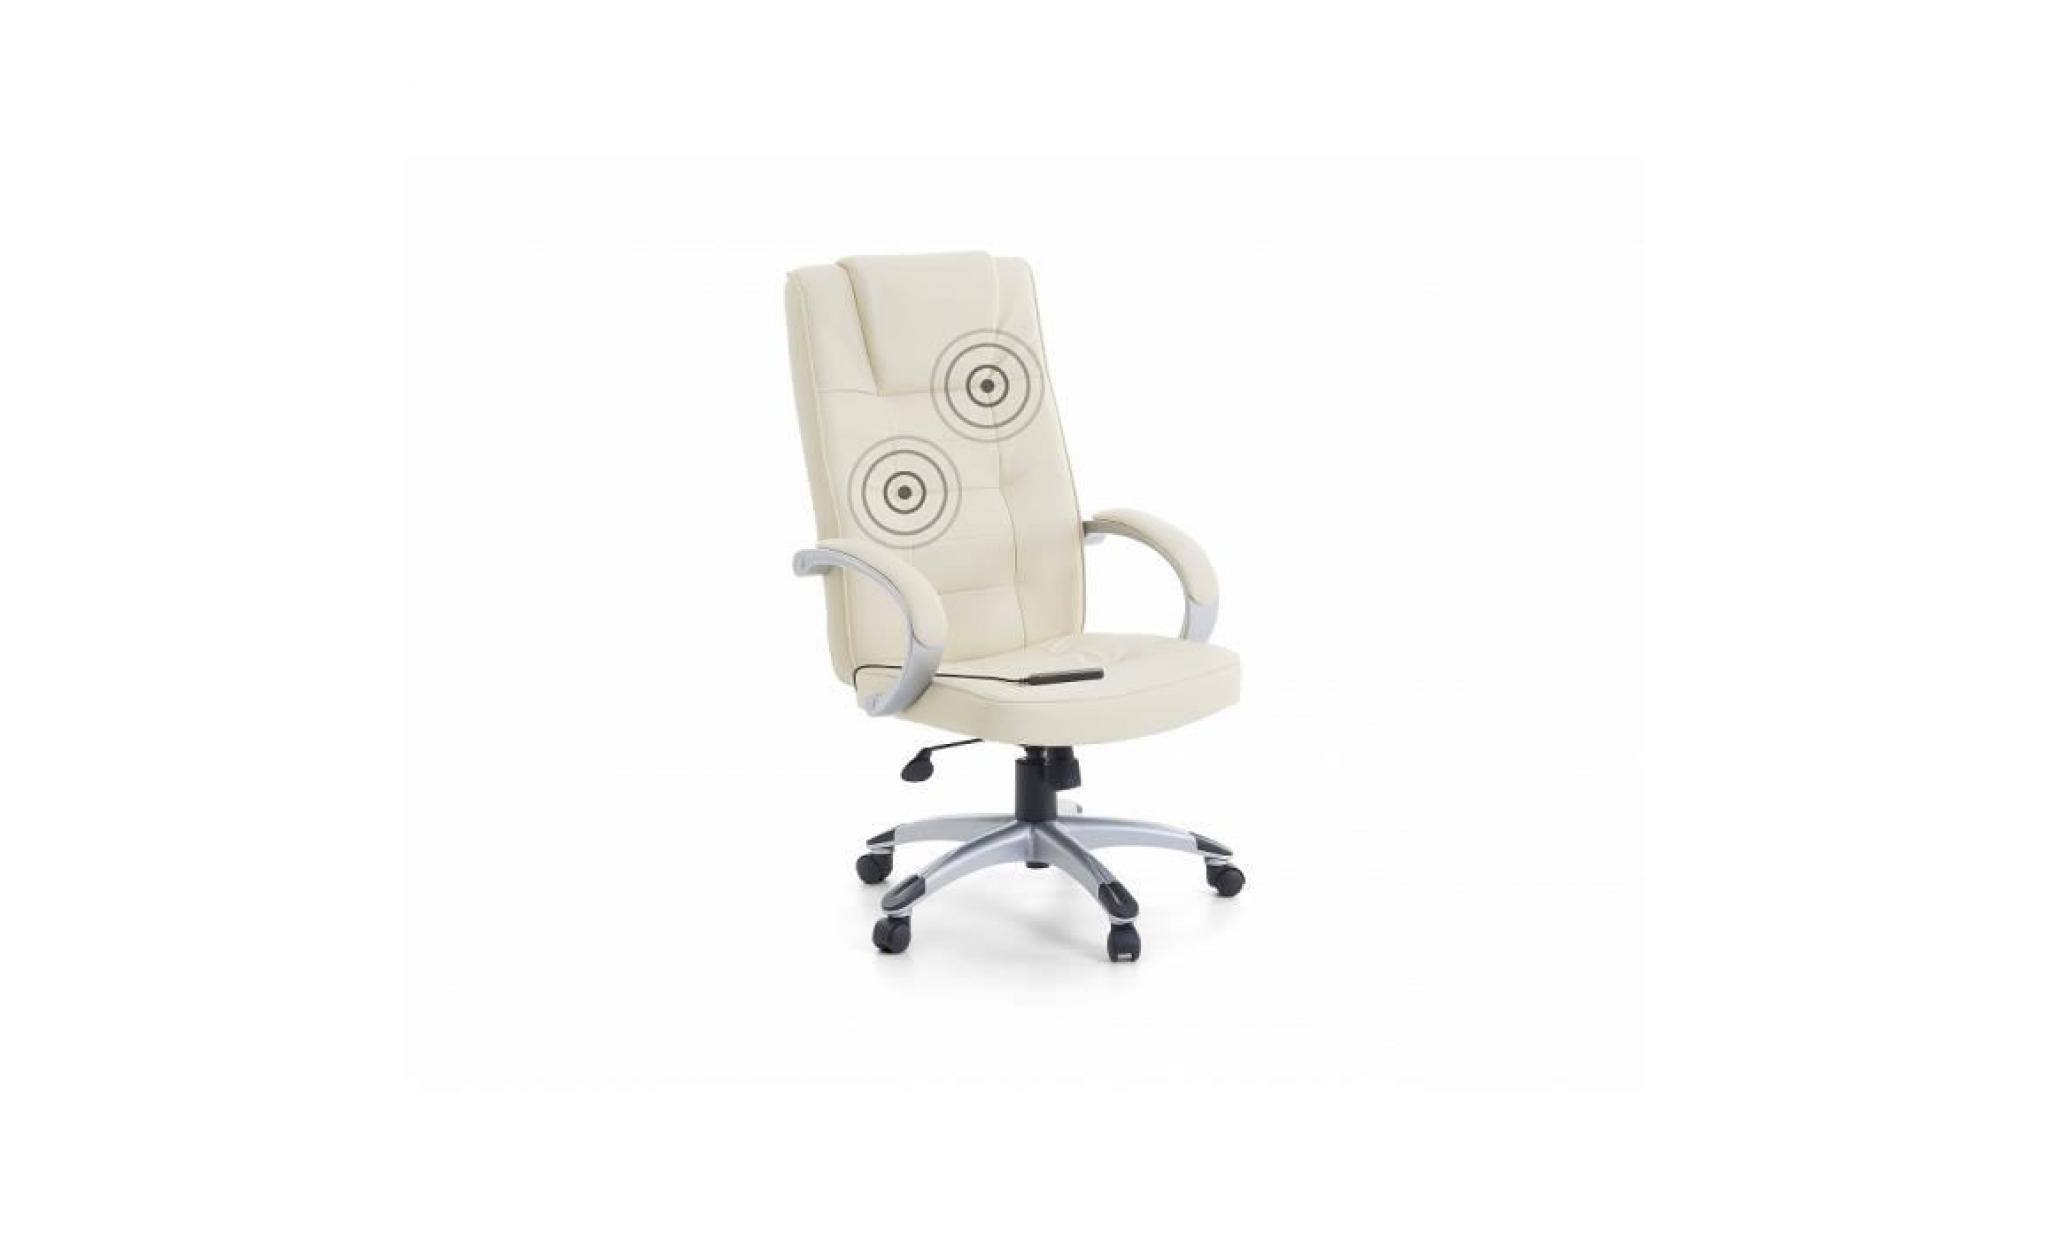 fauteuil massant   chaise de bureau   pu beige et pied argent   diamond ii